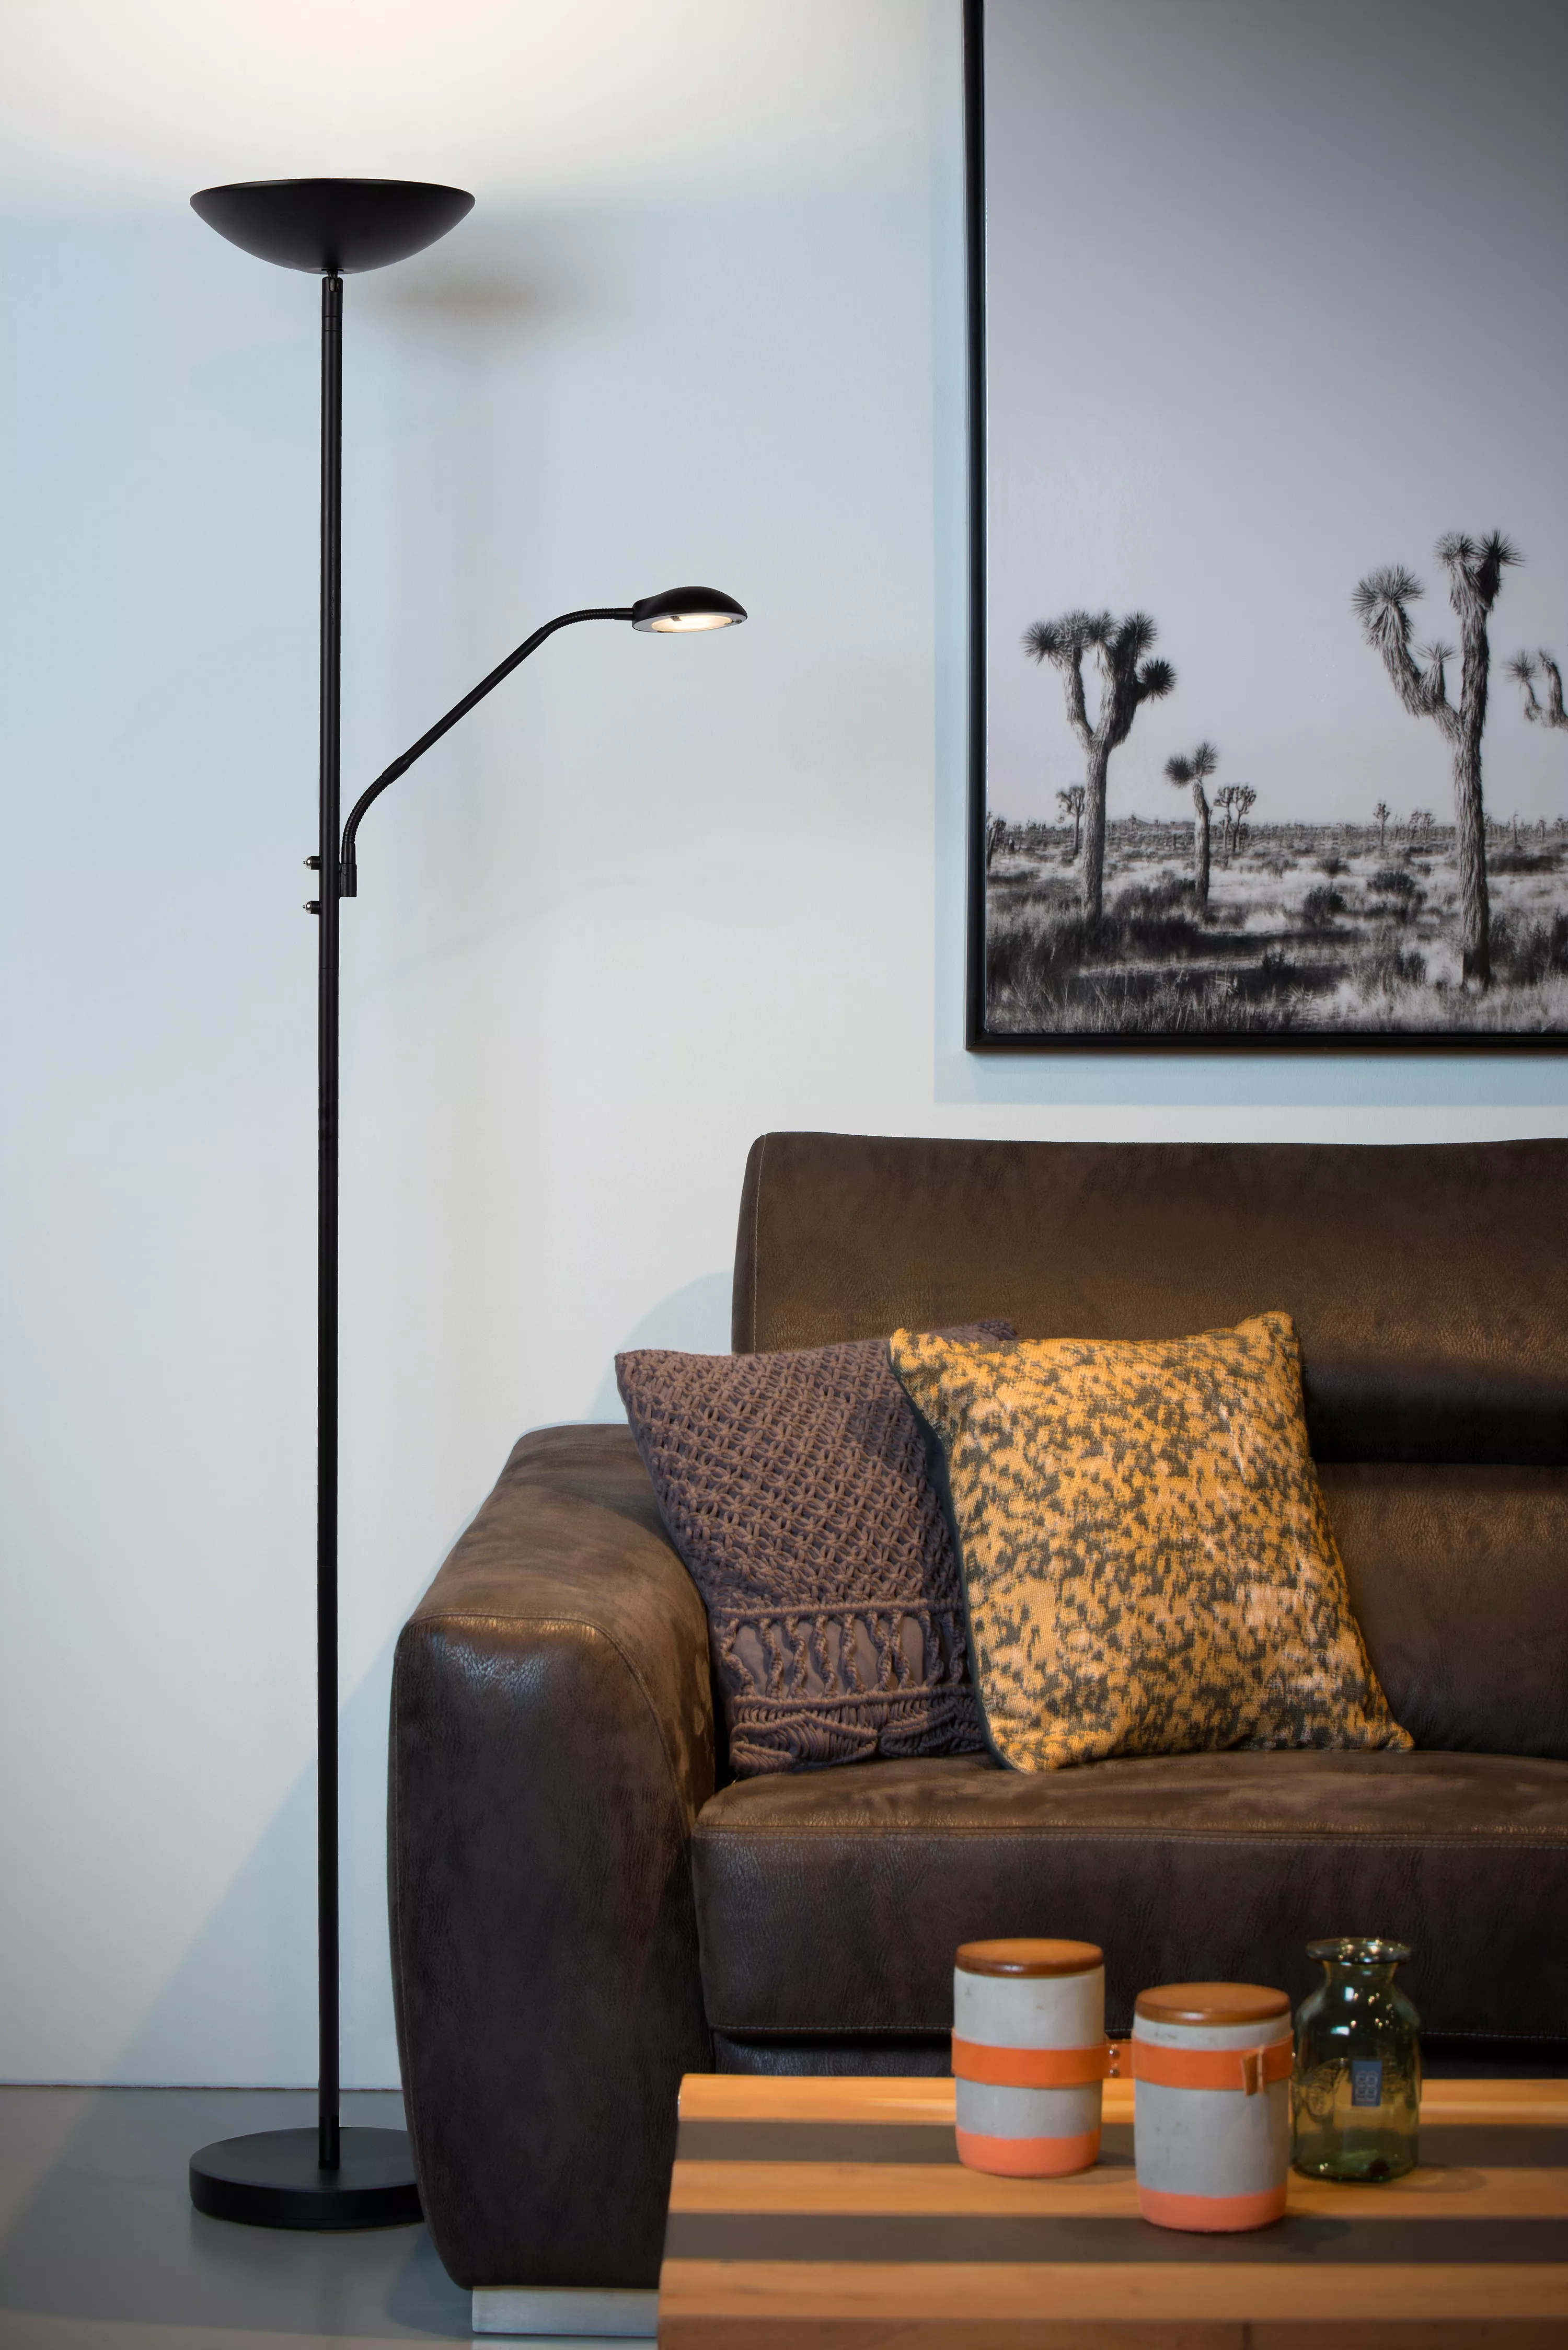 Stojacia lampa Zenith od Lucide kombinuje dve tienidlá s integrovaným LED zdrojom a nastaviteľným ramenom. Ideálna do obývačky alebo spálne.